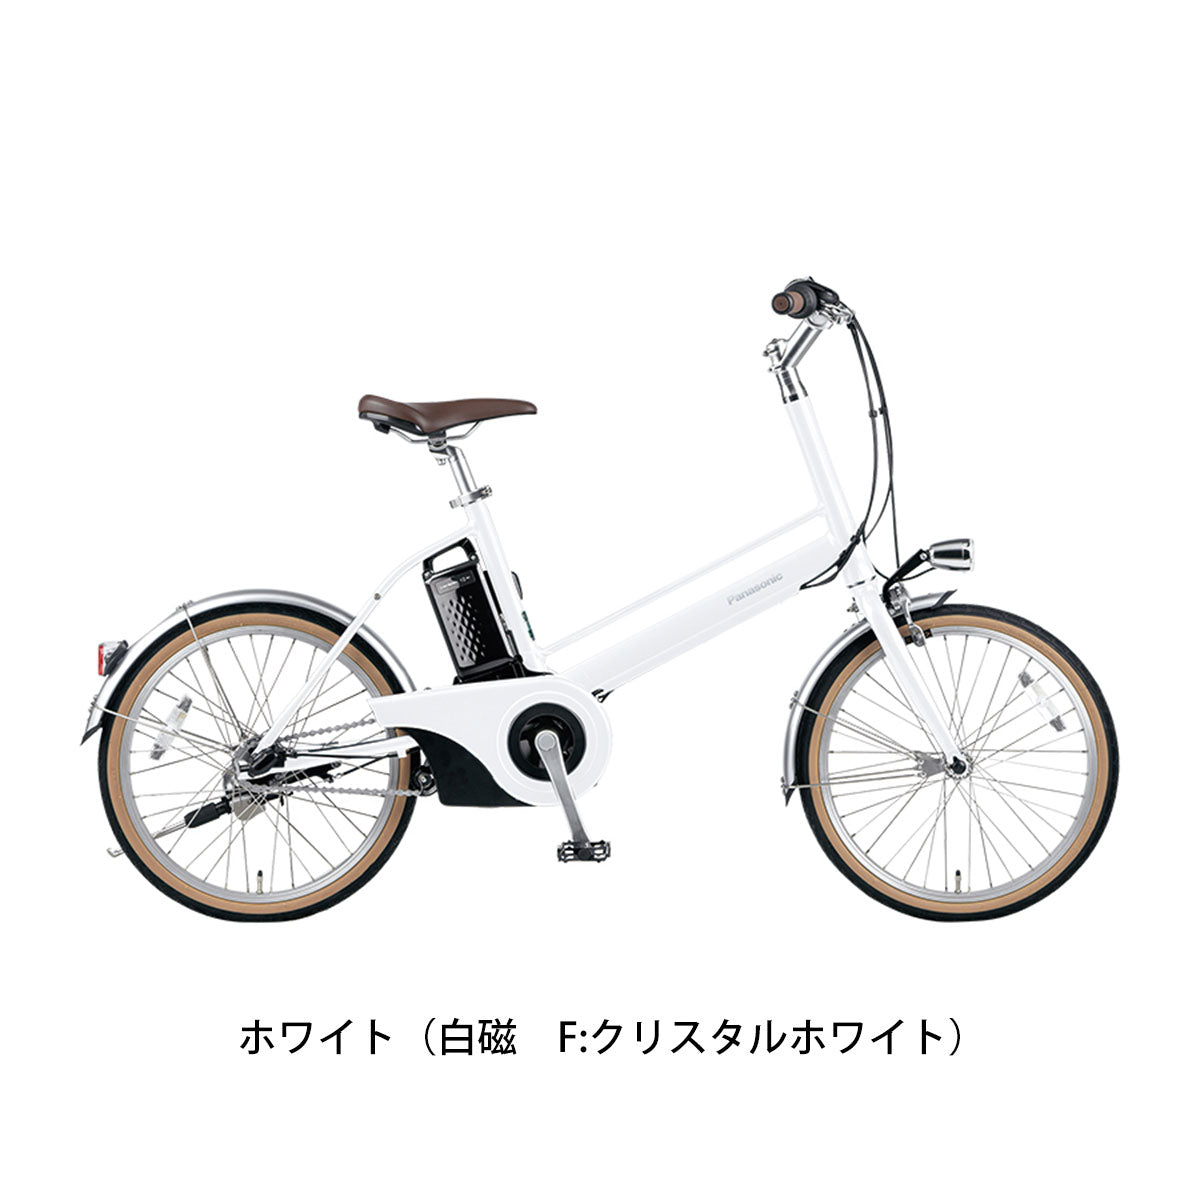 パナソニック 電動自転車 アシスト自転車 Jコンセプト 内装3段モデル Panasonic 20インチ 12Ah 3段変速  BE-JELJ034